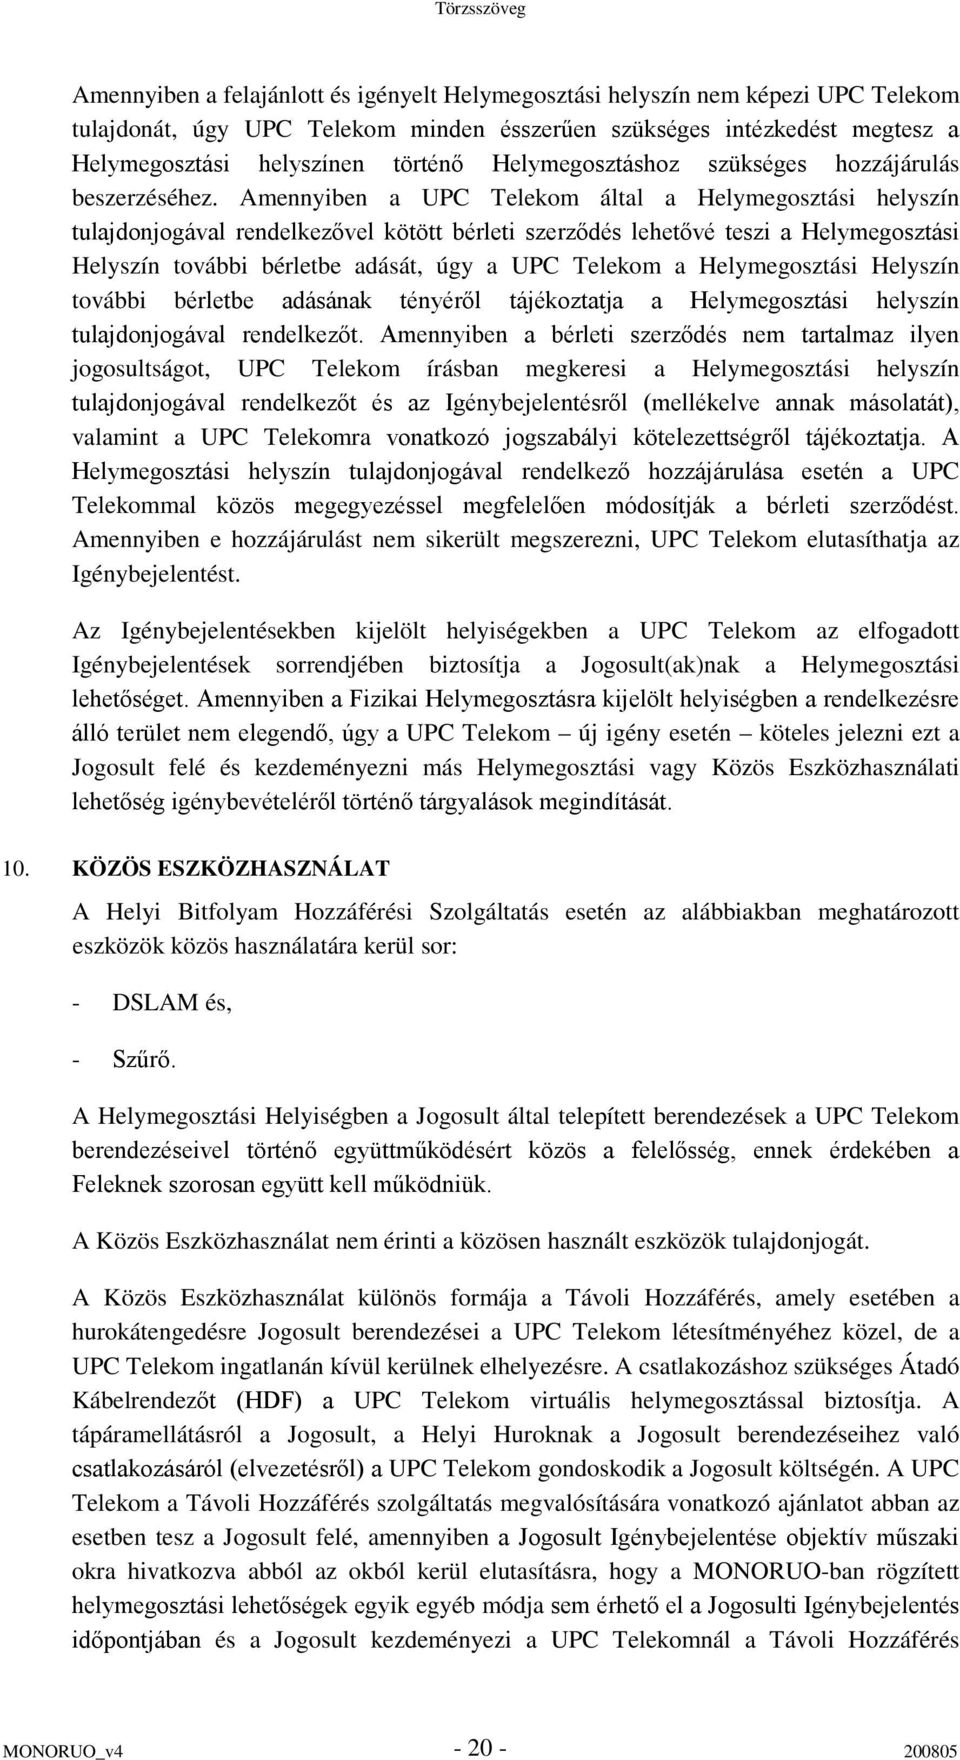 Amennyiben a UPC Telekom által a Helymegosztási helyszín tulajdonjogával rendelkezővel kötött bérleti szerződés lehetővé teszi a Helymegosztási Helyszín további bérletbe adását, úgy a UPC Telekom a